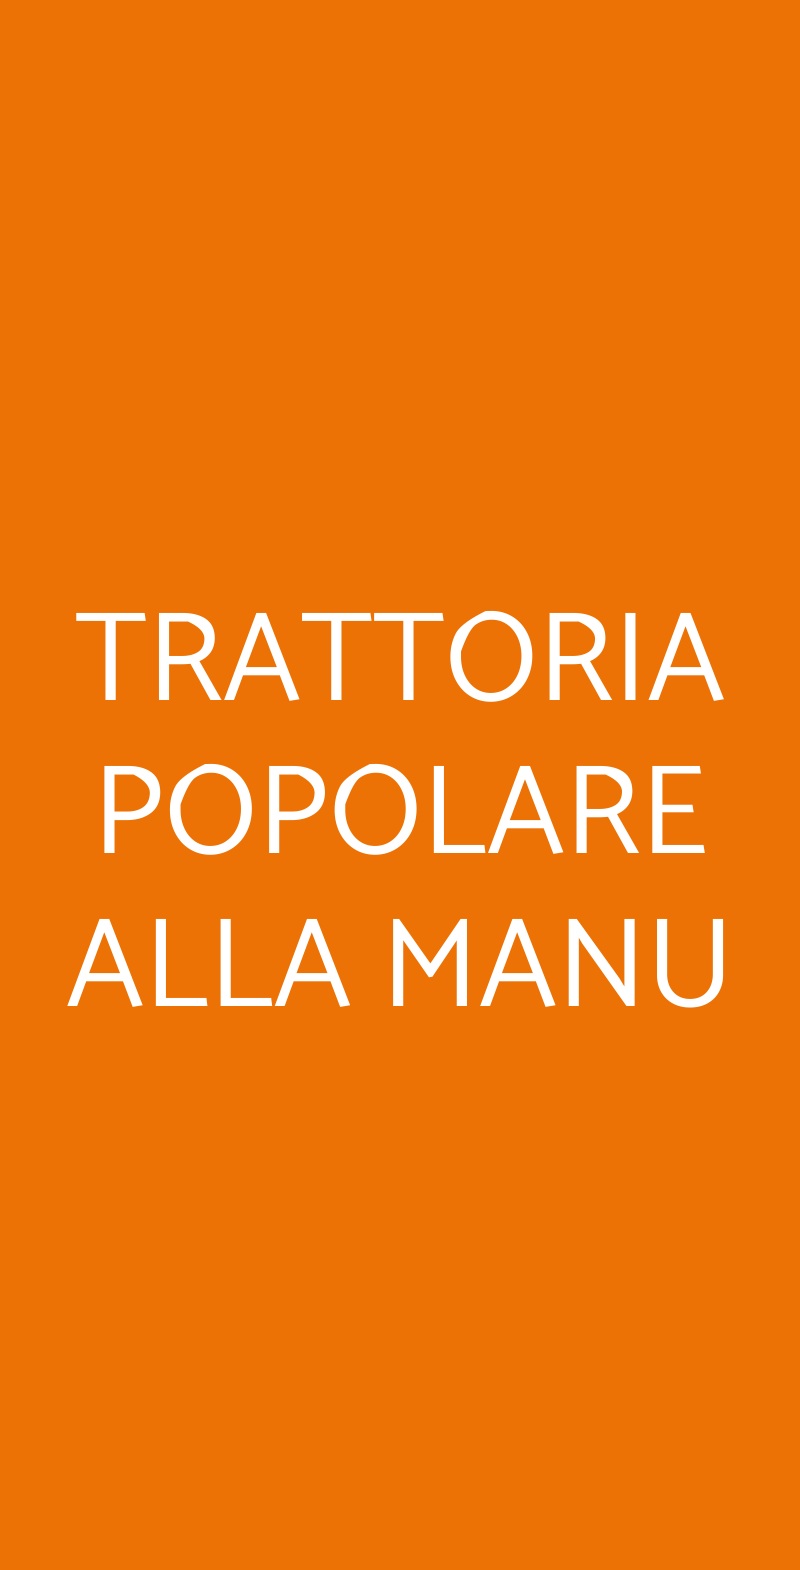 TRATTORIA POPOLARE ALLA MANU Milano menù 1 pagina